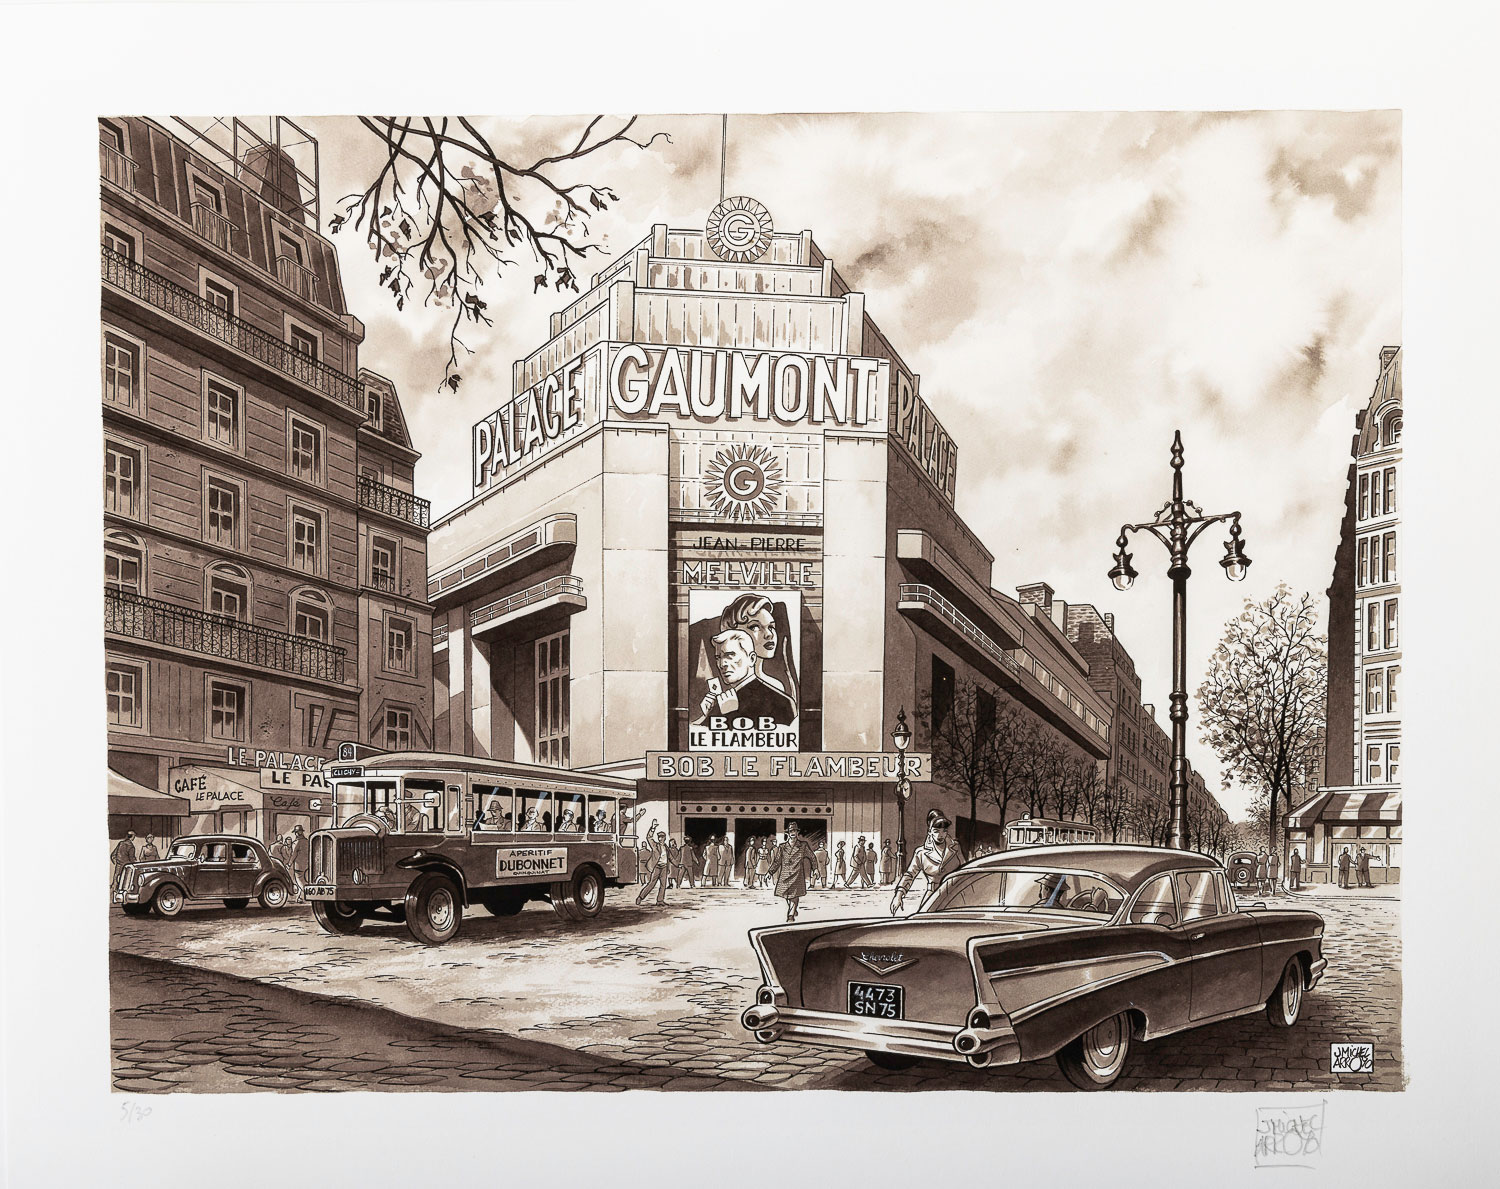 Lámina pigmentaria firmada Jean-Michel Arroyo : Gaumont Palace - Lámina 